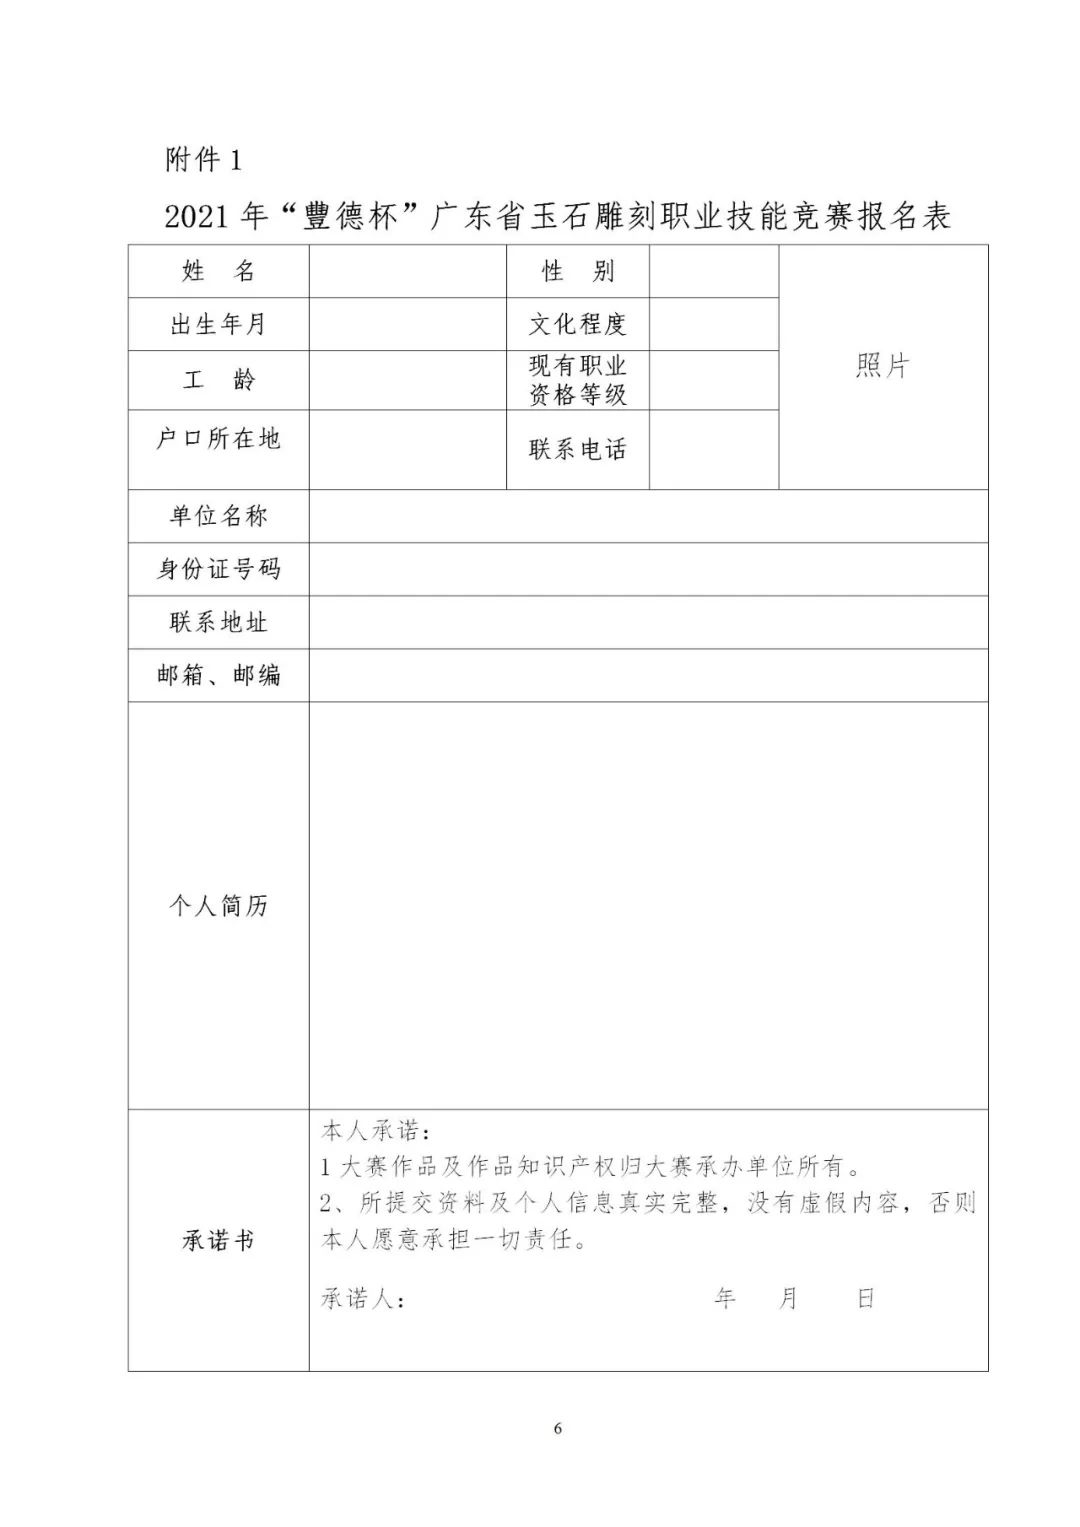 关于举办2021年“豐德杯”广东省玉石雕刻职业技能竞赛的通知 (6).jpg